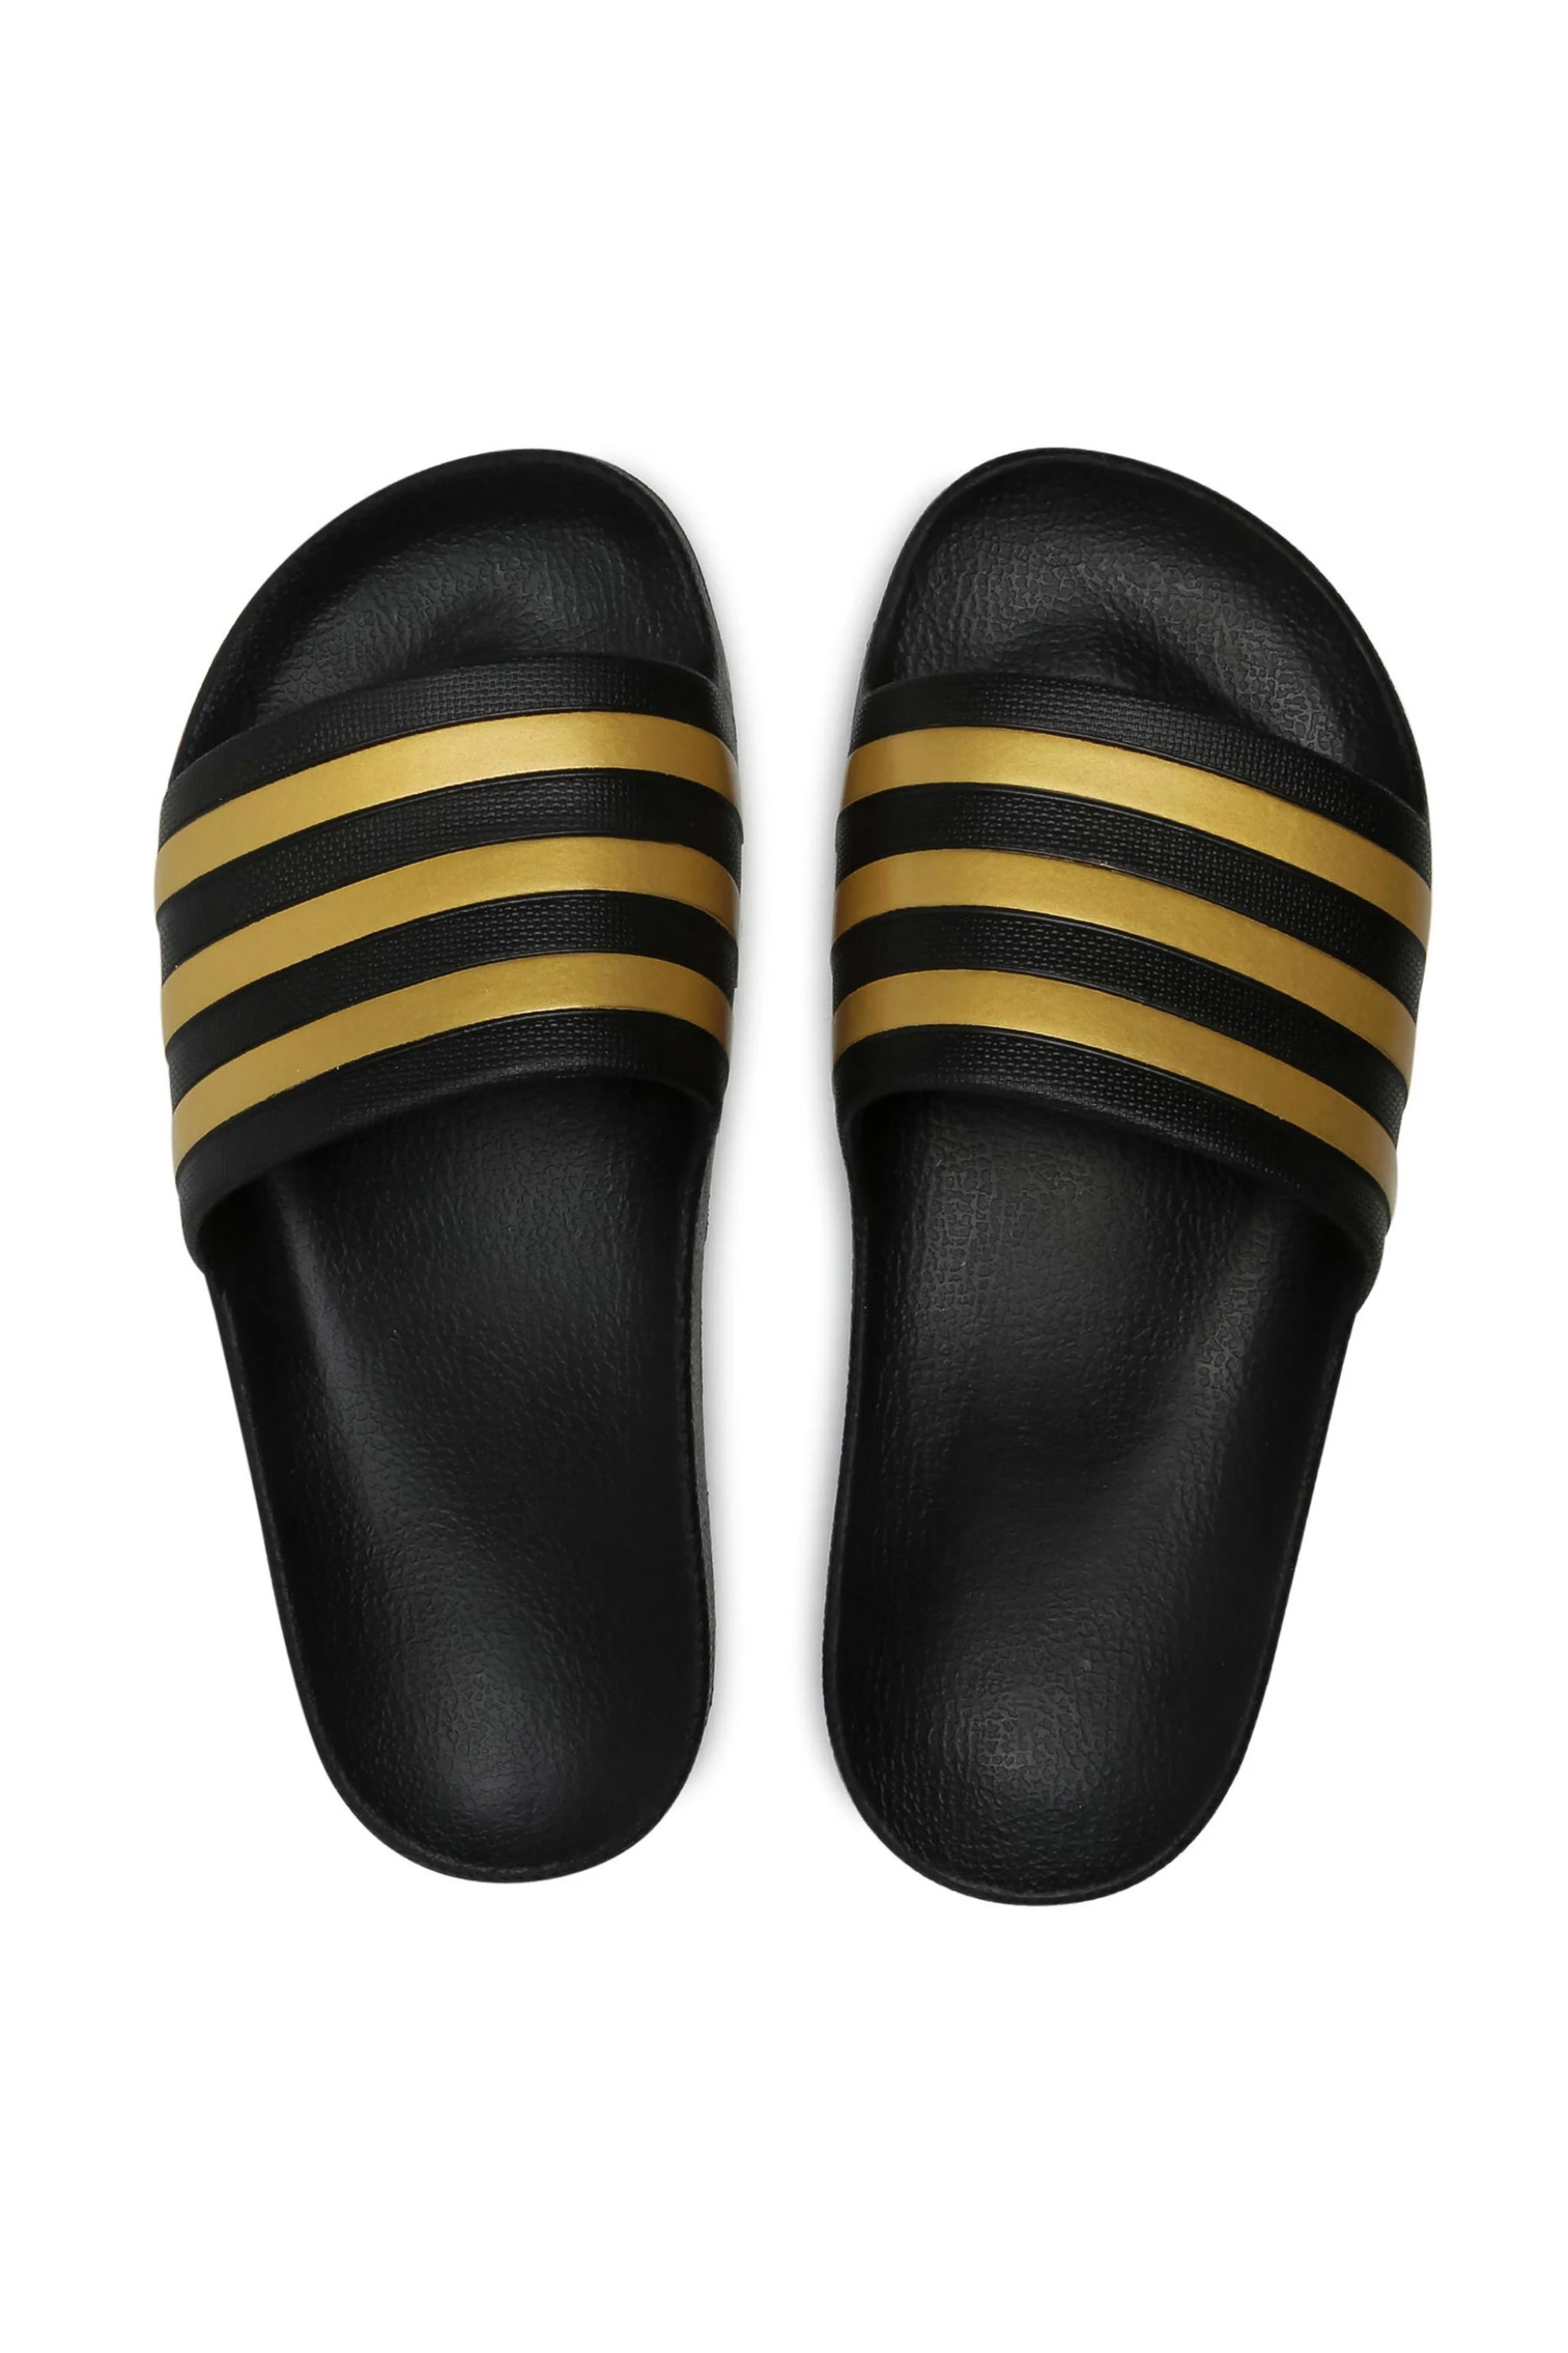 Ανδρική Μόδα > Ανδρικά Παπούτσια > Ανδρικές Παντόφλες & Σαγιονάρες Adidas unisex σαγιονάρες με ανάγλυφο λογότυπο "Adilette Aqua Slides" - EG1758 Μαύρο